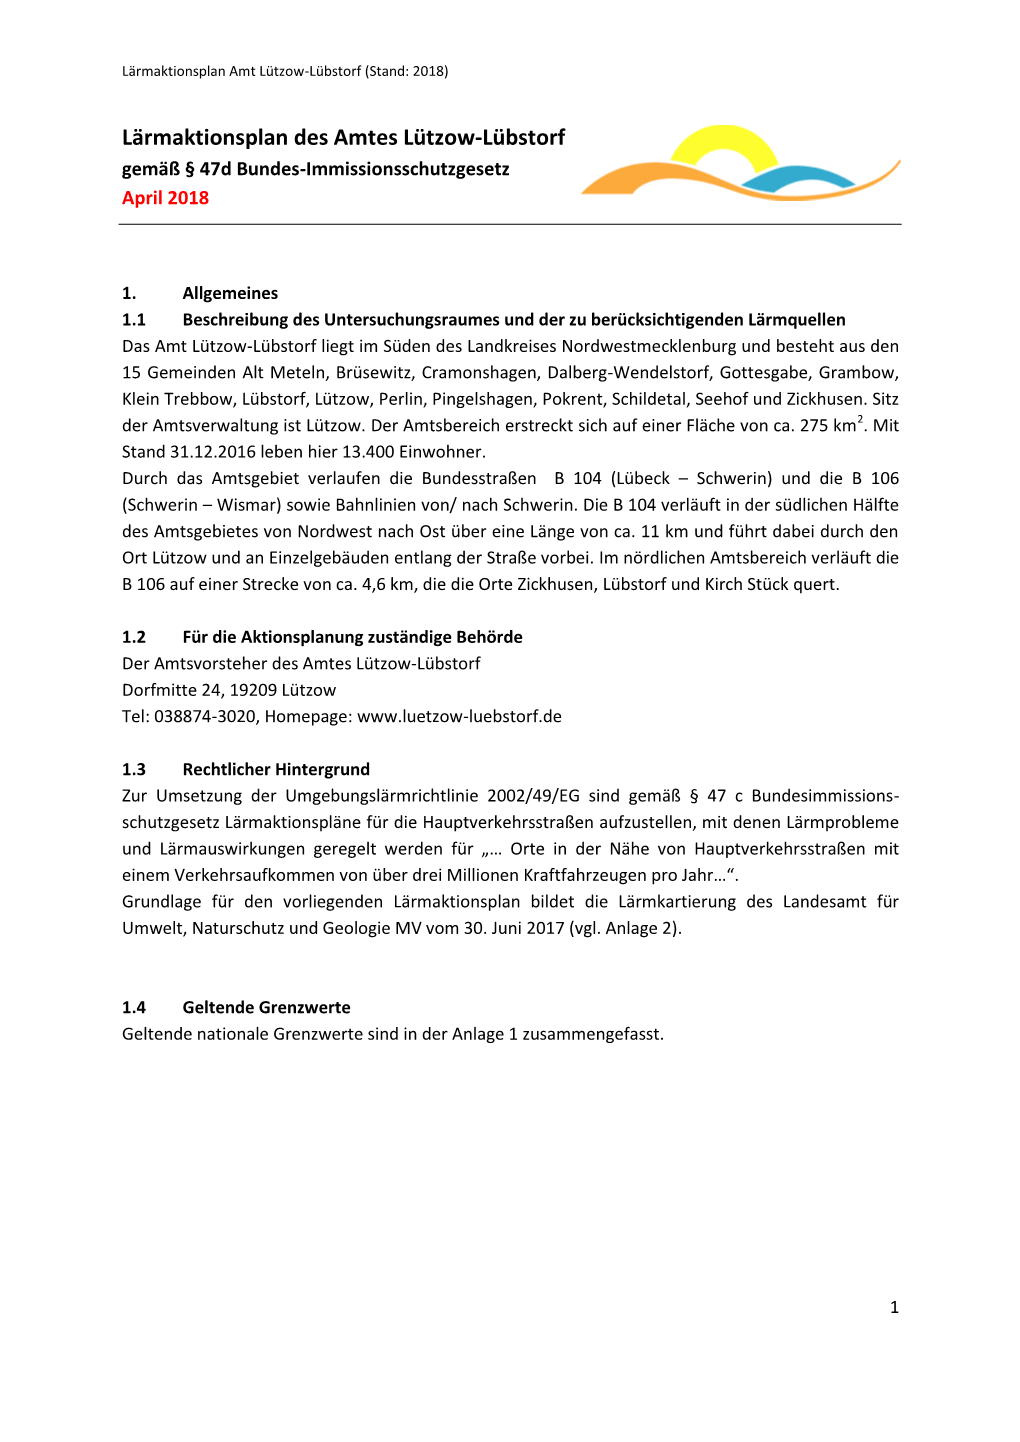 Lärmaktionsplan Des Amtes Lützow-Lübstorf Gemäß § 47D Bundes-Immissionsschutzgesetz April 2018